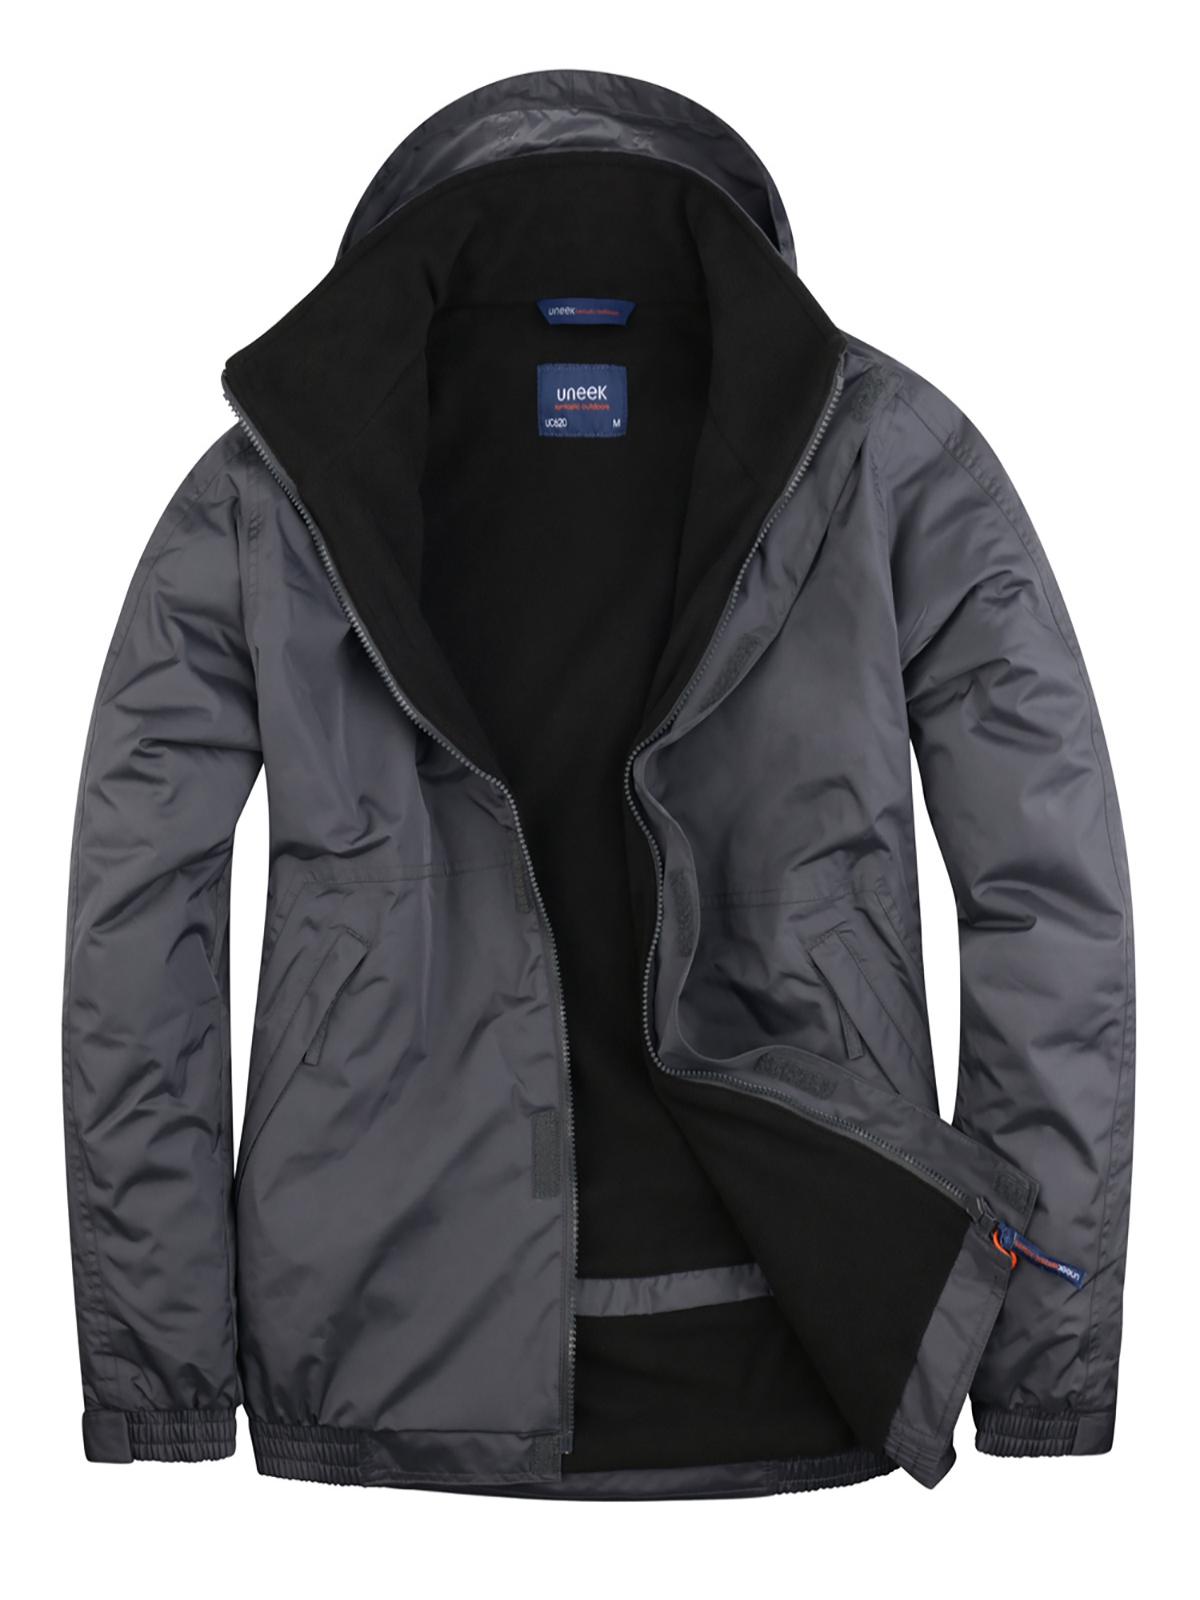 Uneek Premium Outdoor Jacket UC620 - Deep Grey/Black